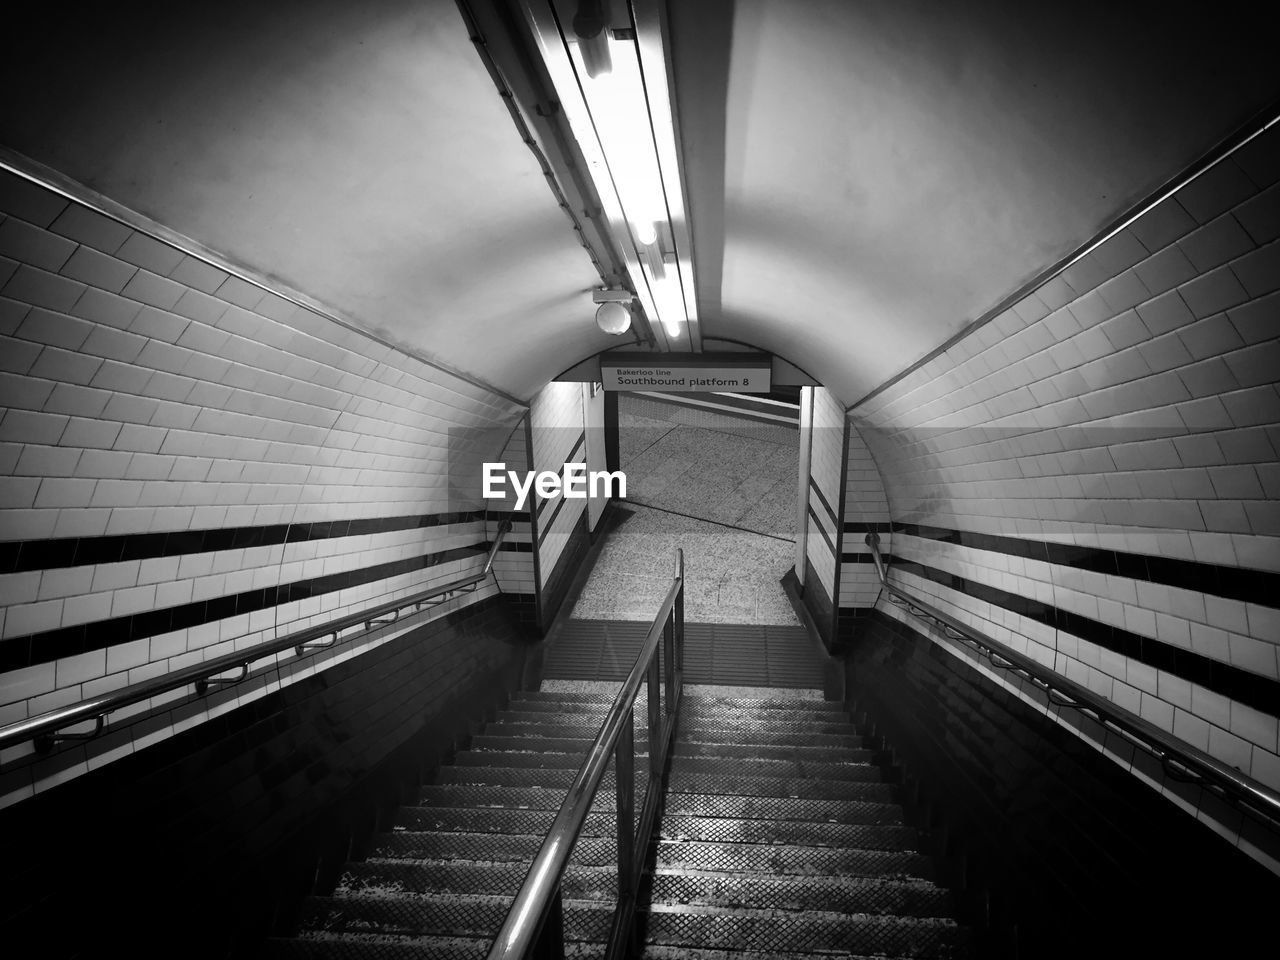 London underground staircase